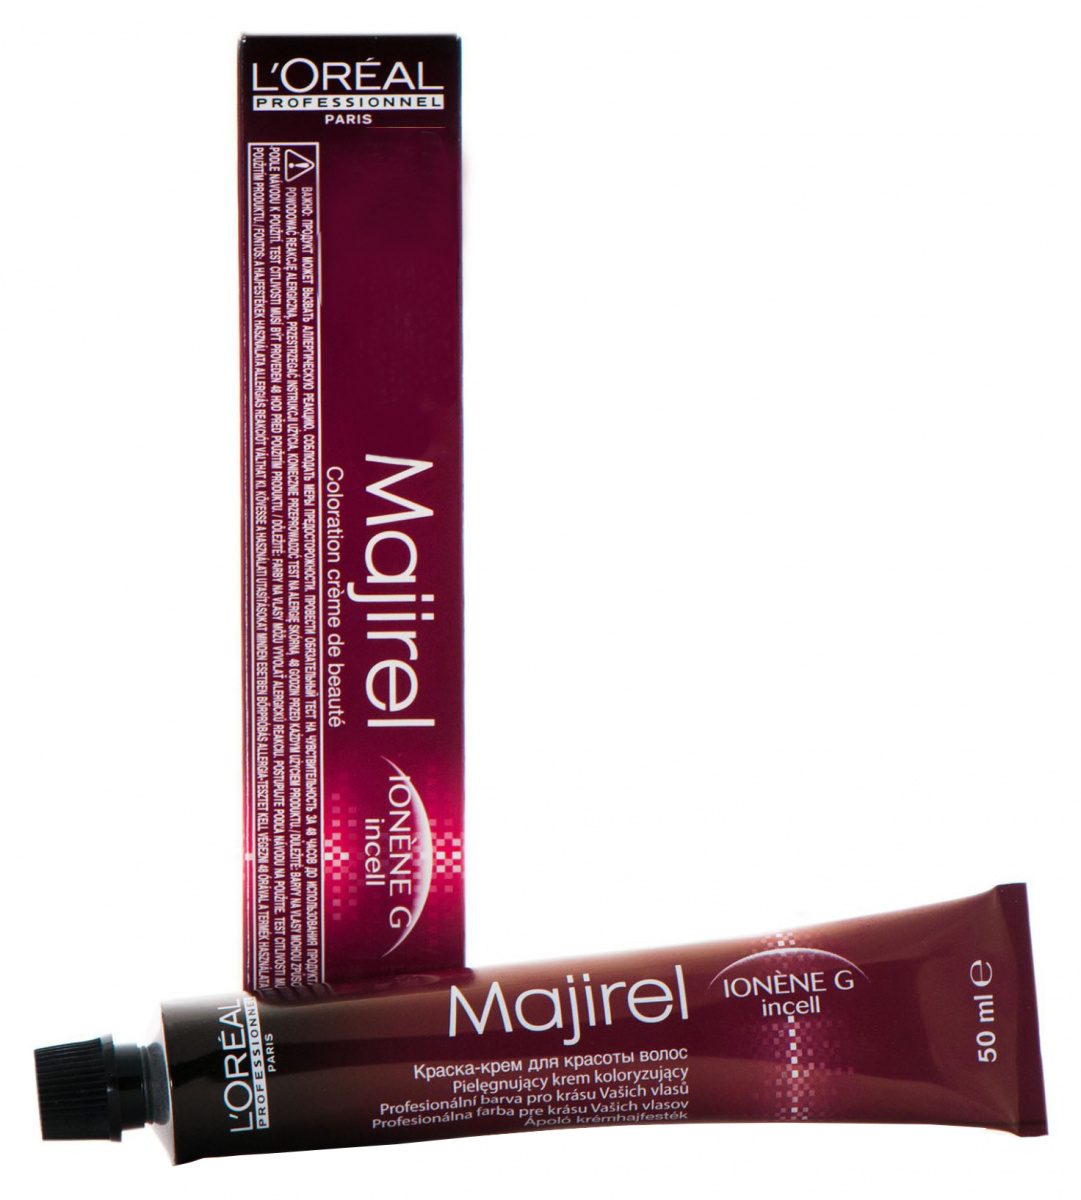 L'Oreal Professionnel Majirel Metals - Стойкая крем-краска для волос .11 глубокий пепельный 50 мл L'Oreal Professionnel (Франция) купить по цене 1 014 руб.